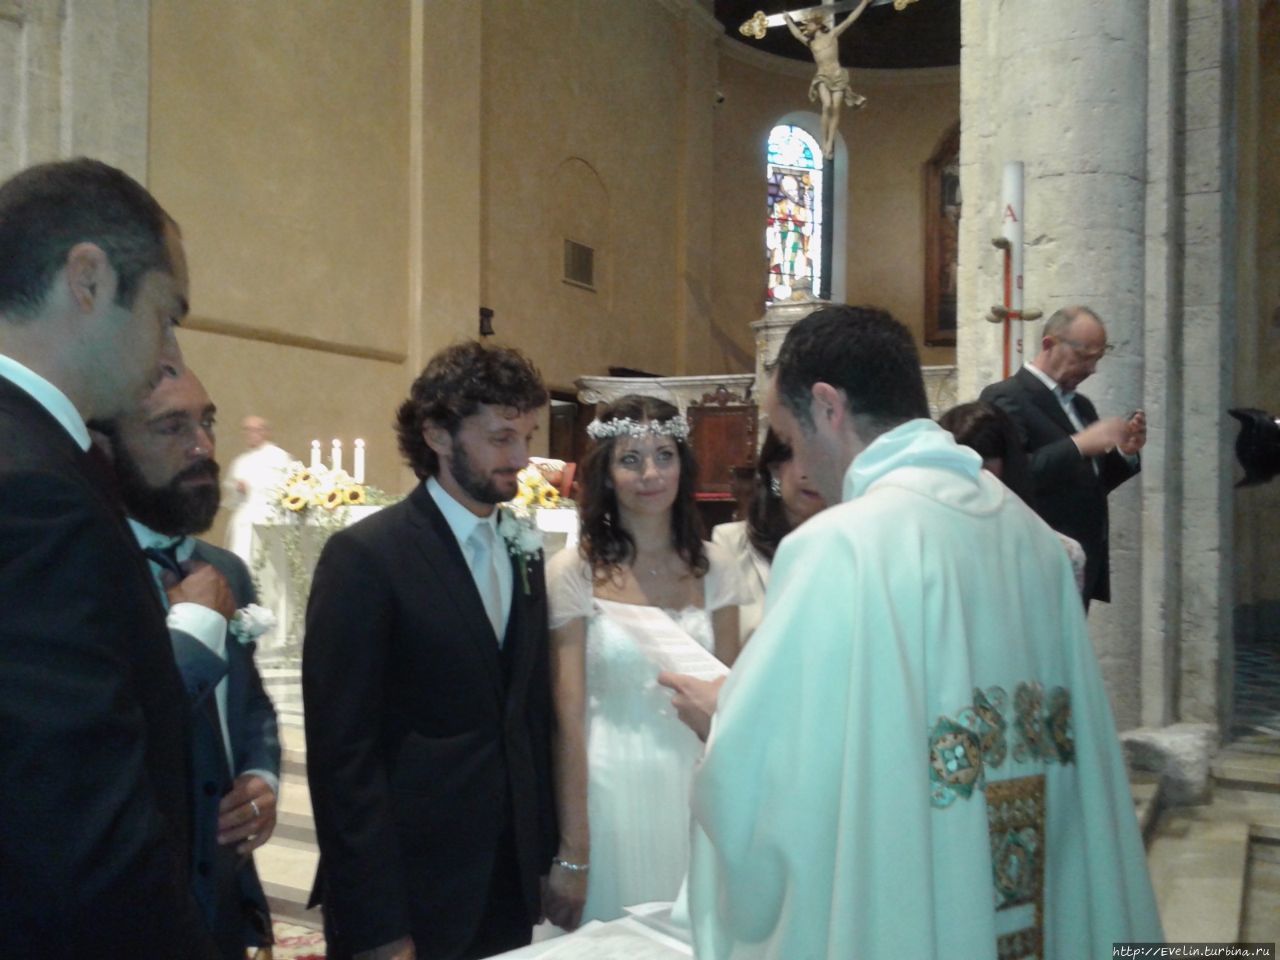 Итальянская свадьба — вход свободный Сан-Ремо, Италия